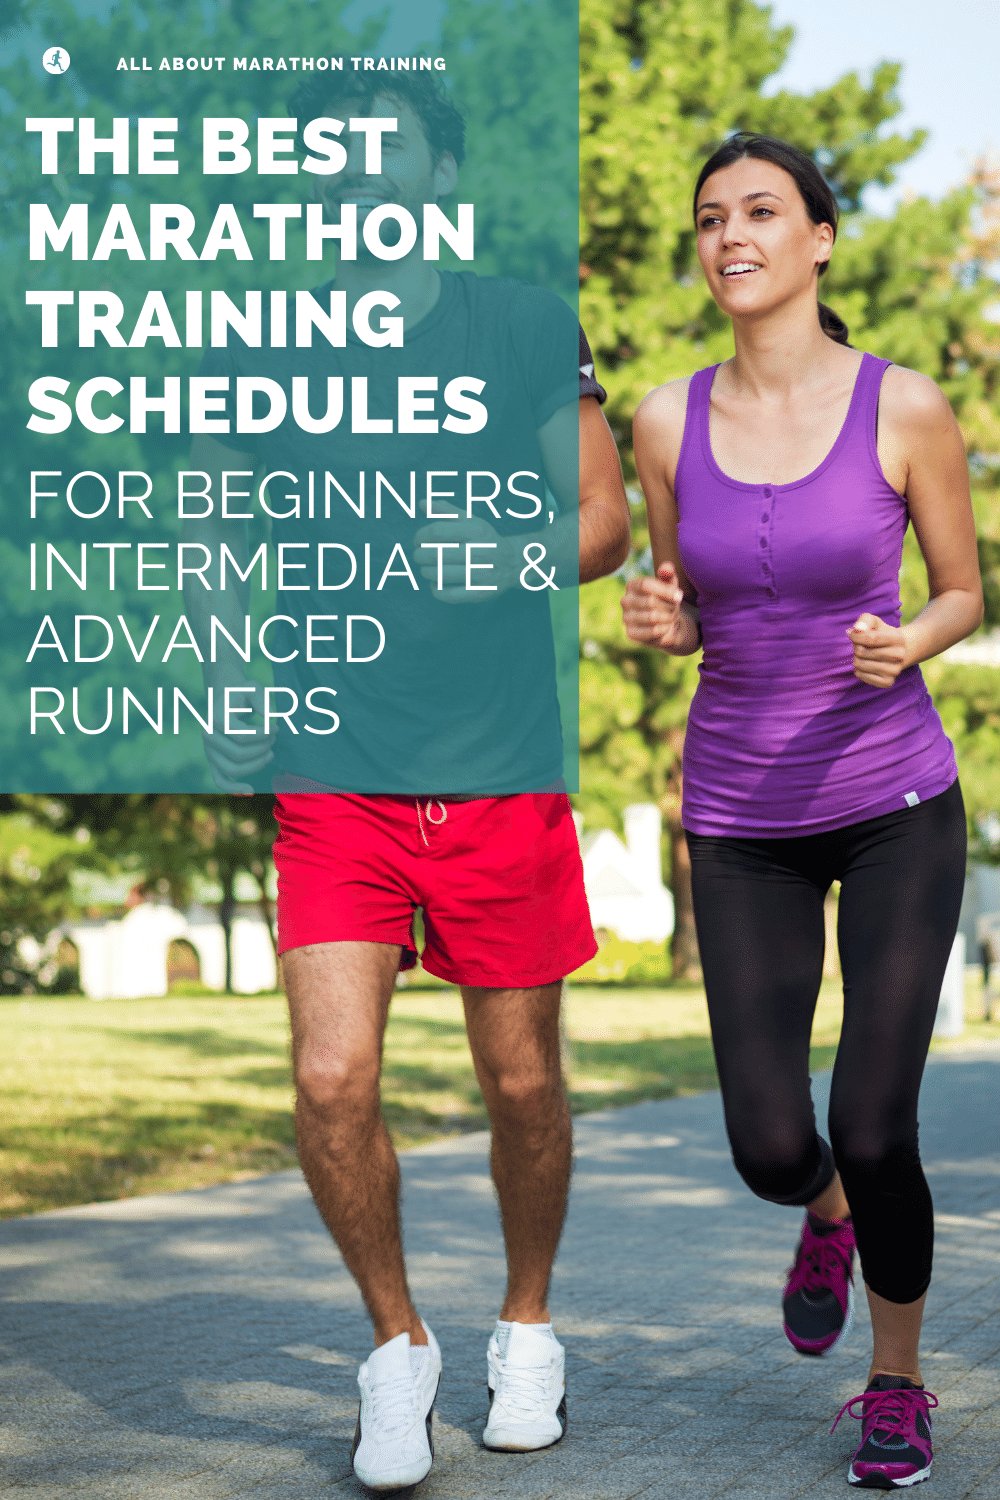 The Best Marathon Training Schedules